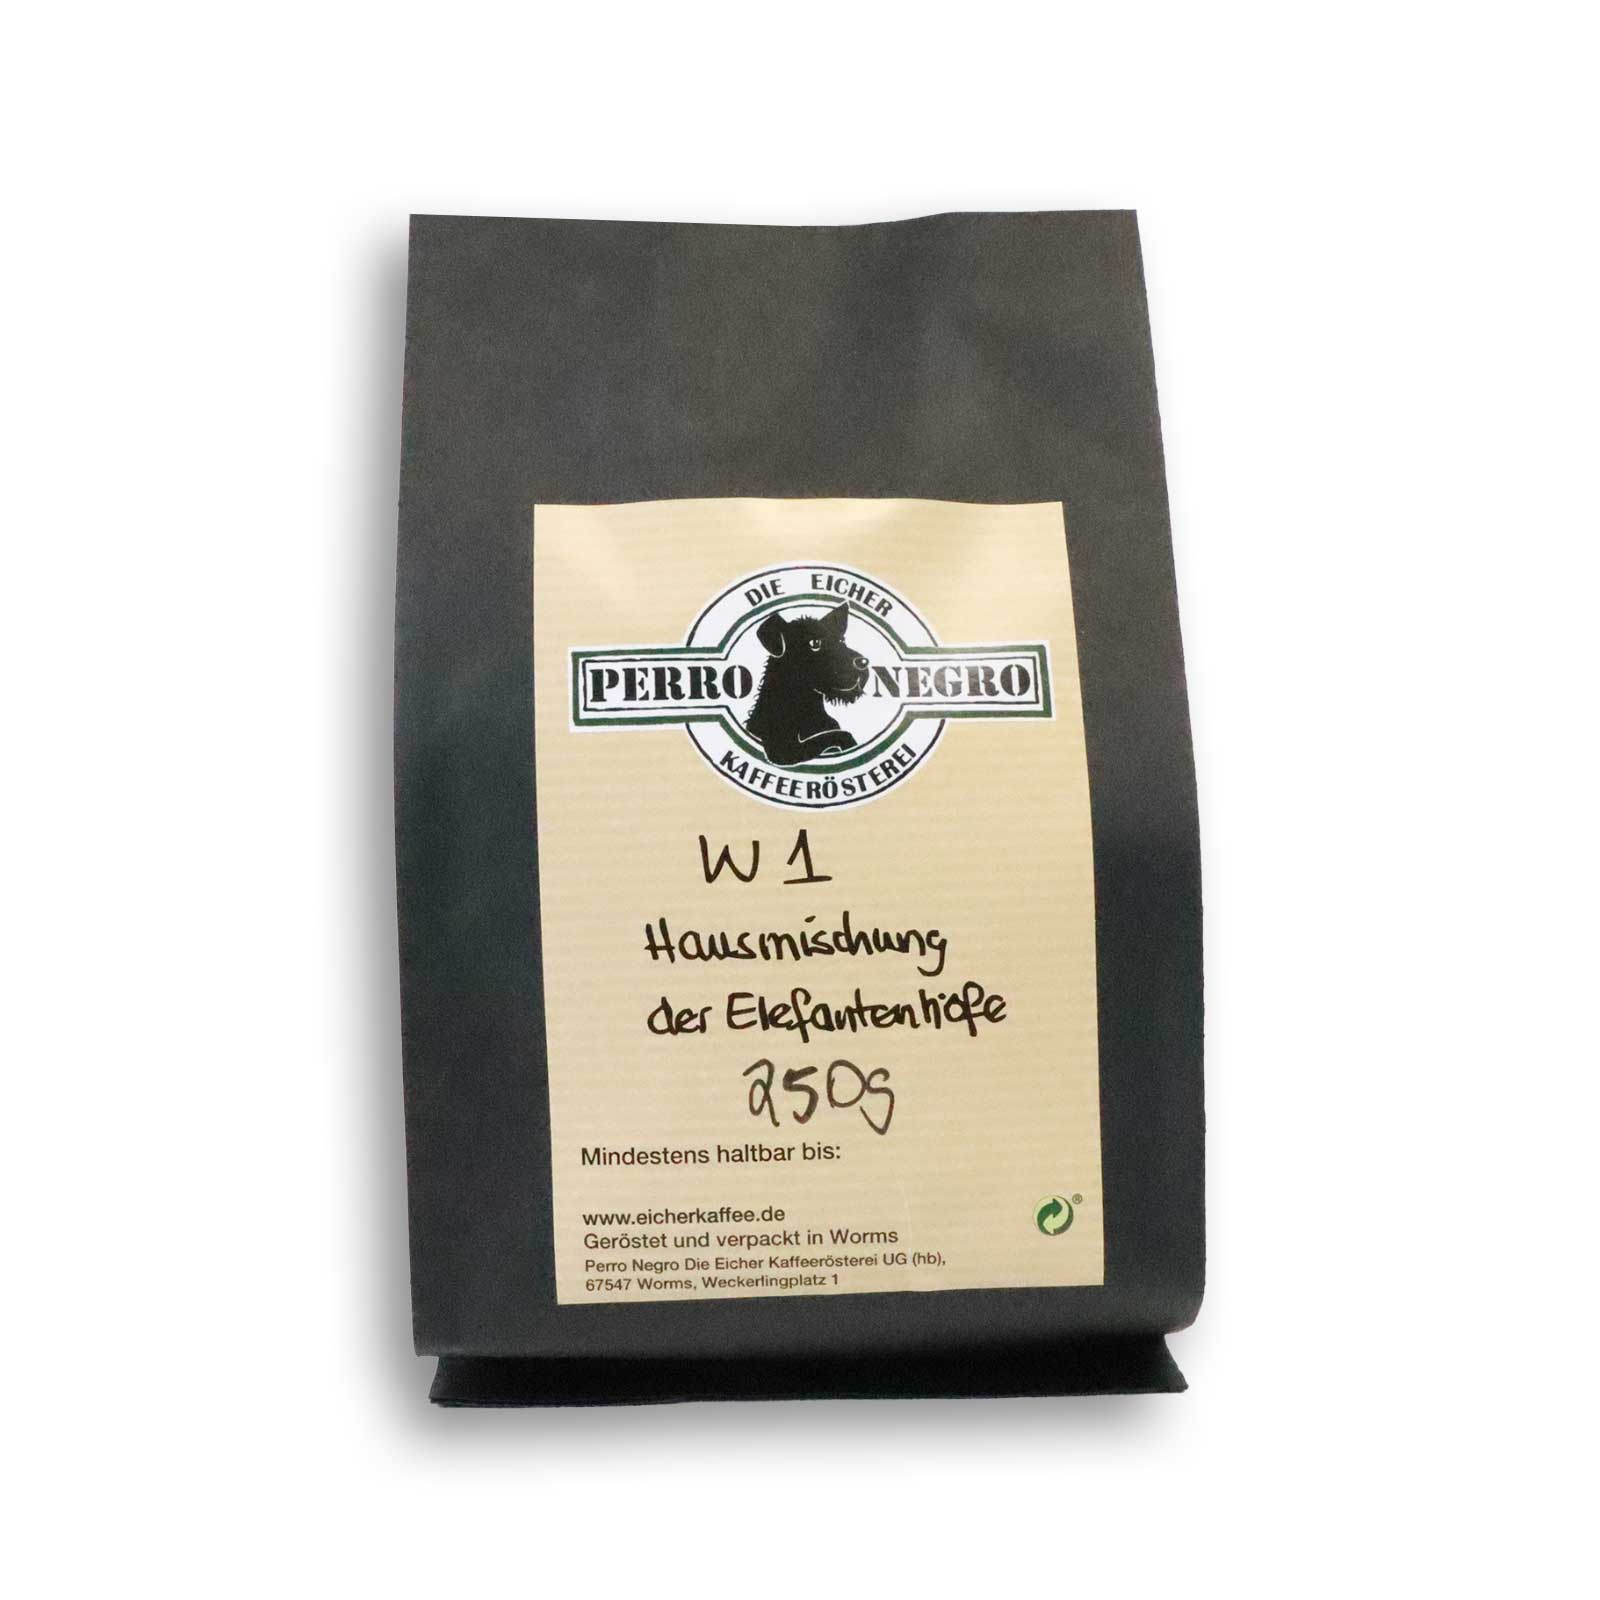 250g W1-Hausmischung Kaffeebohnen der Eicher Kaffeerösterei Perro Negro.